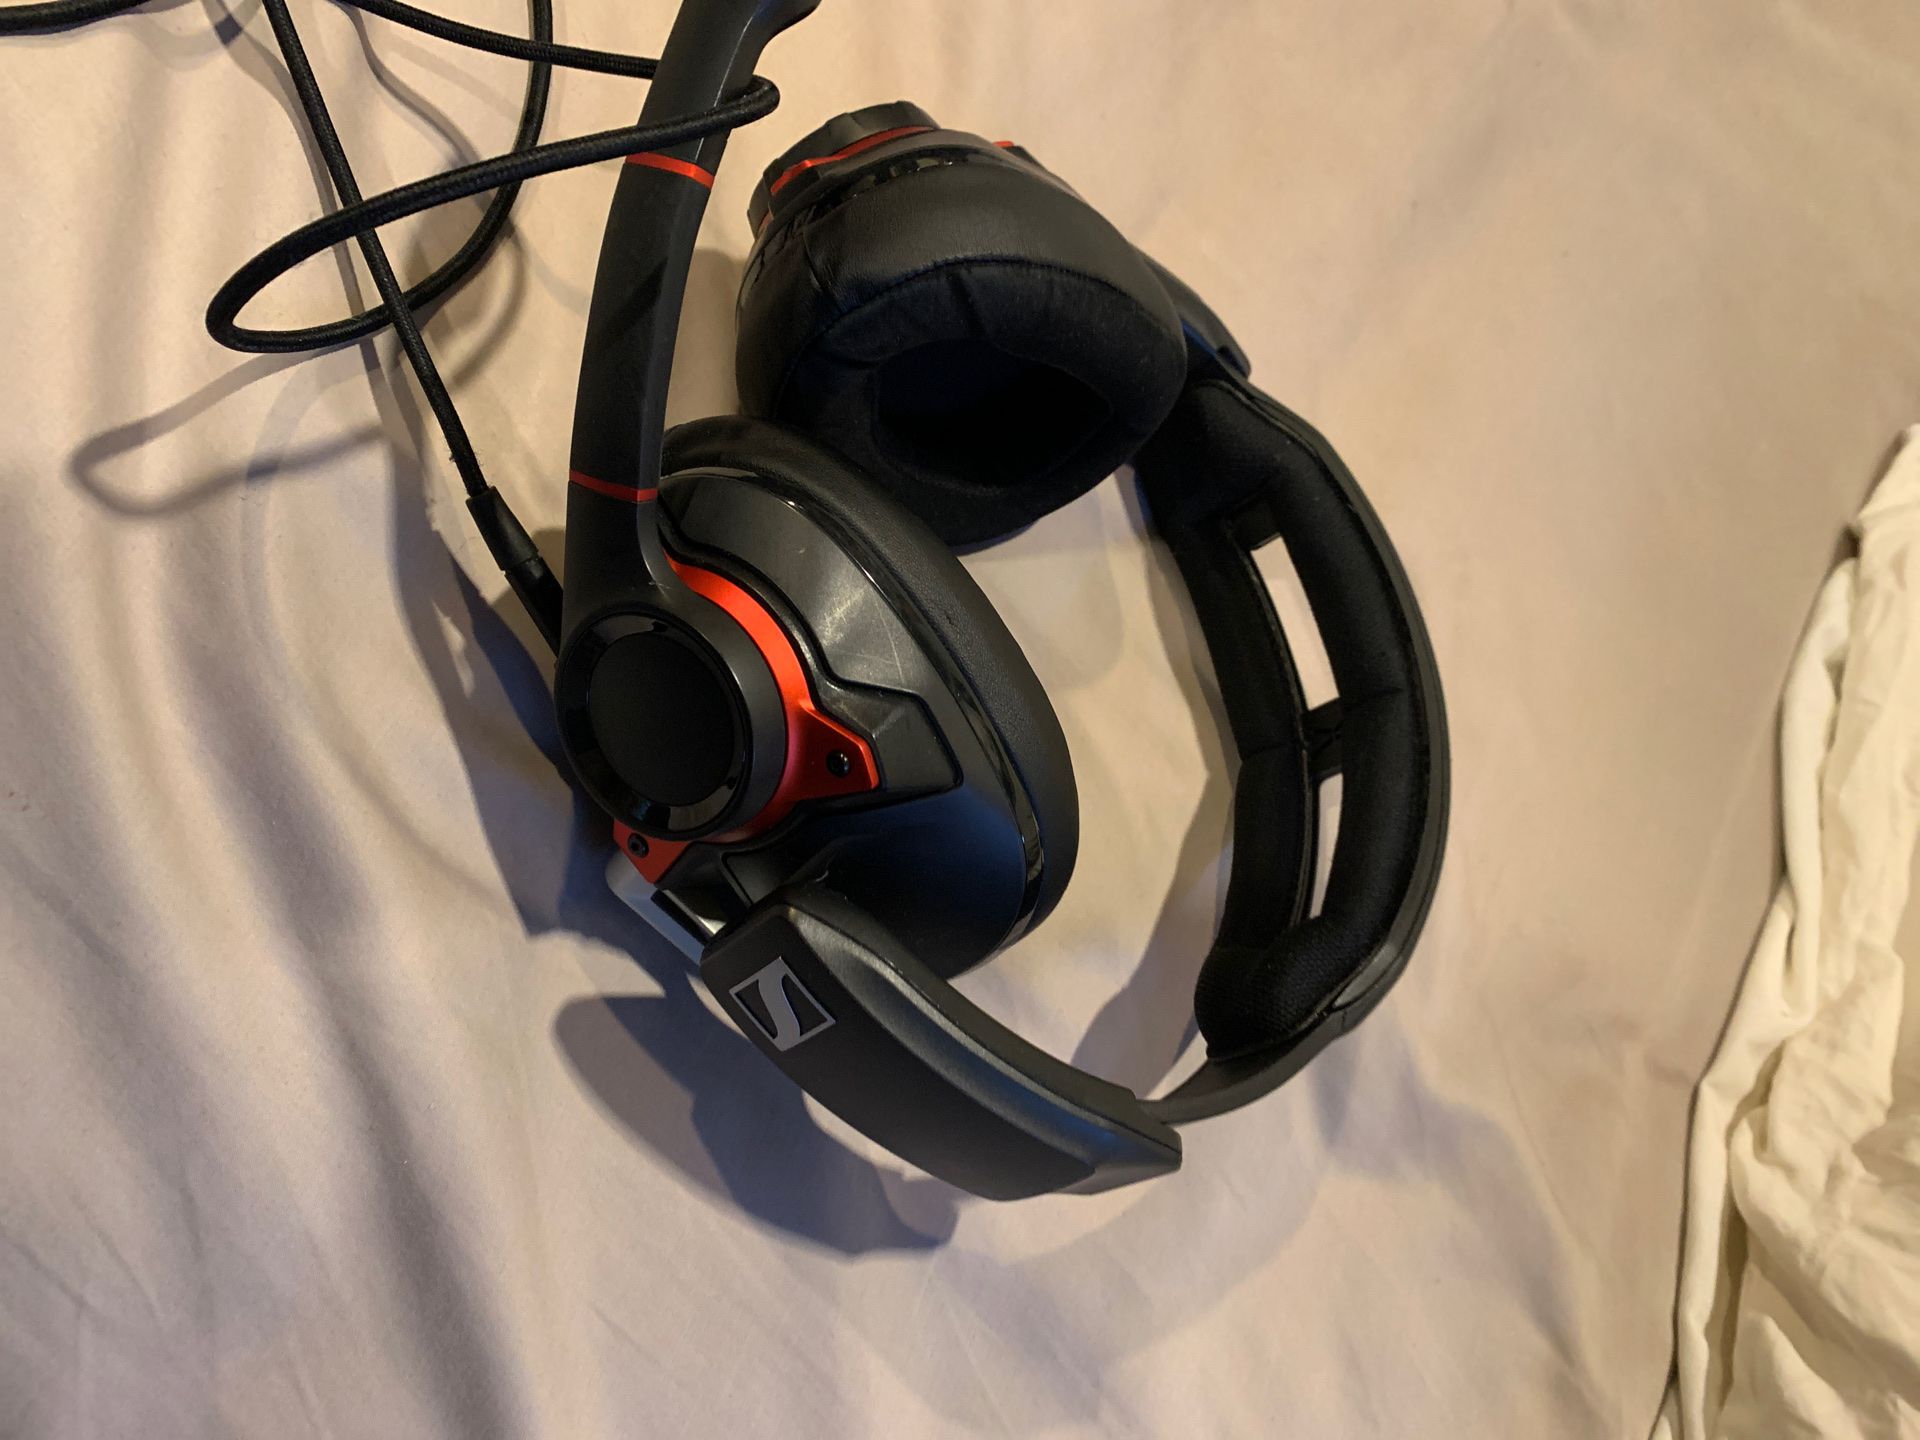 Senheiser GSP600 gaming headphones. $65 obo